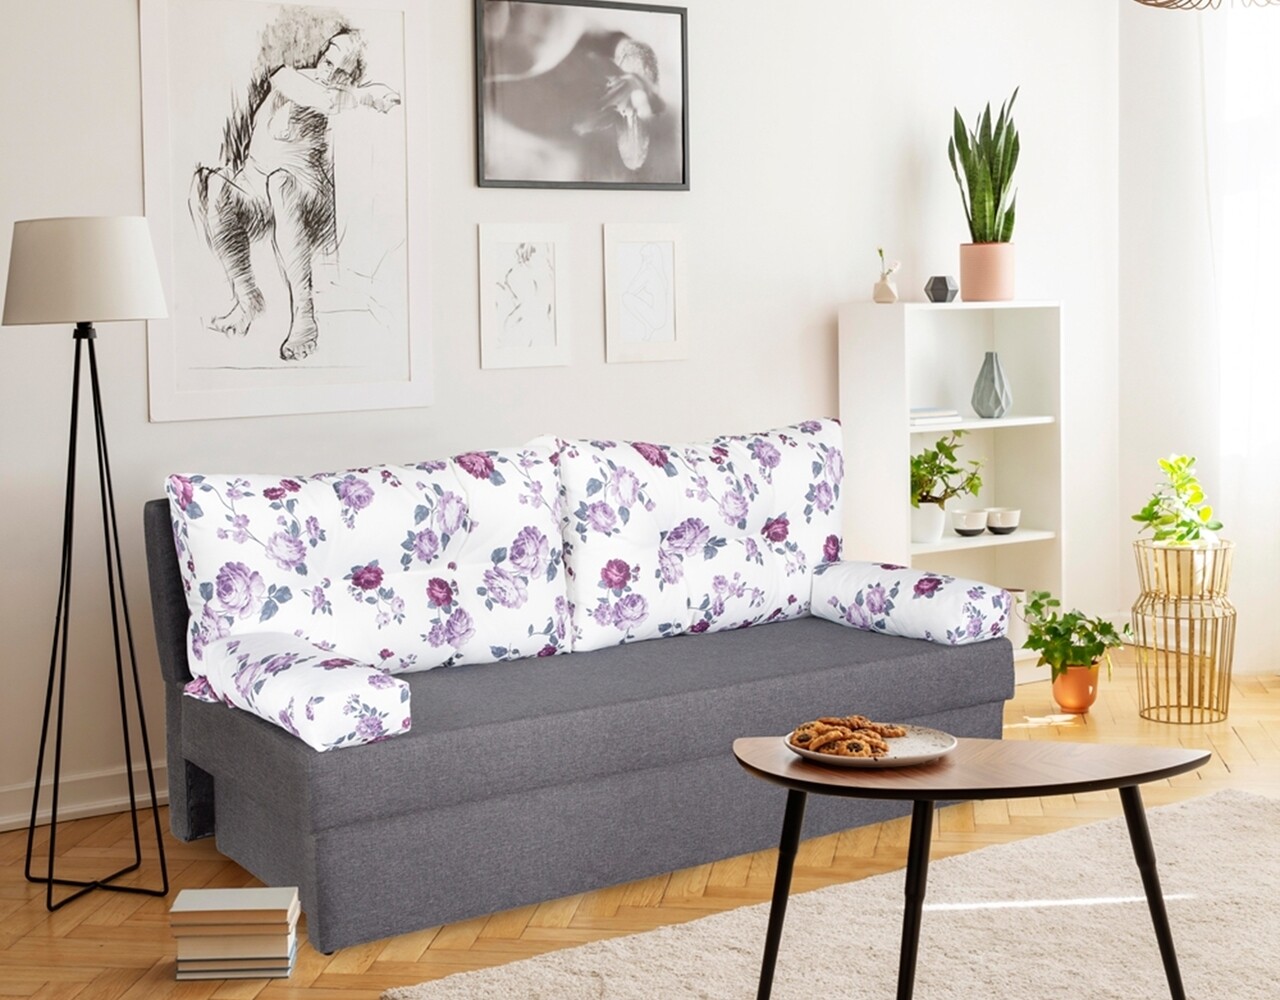 Alfi Grey Kihúzható kanapé 192x80x77 cm tárolóládával, Magnolia